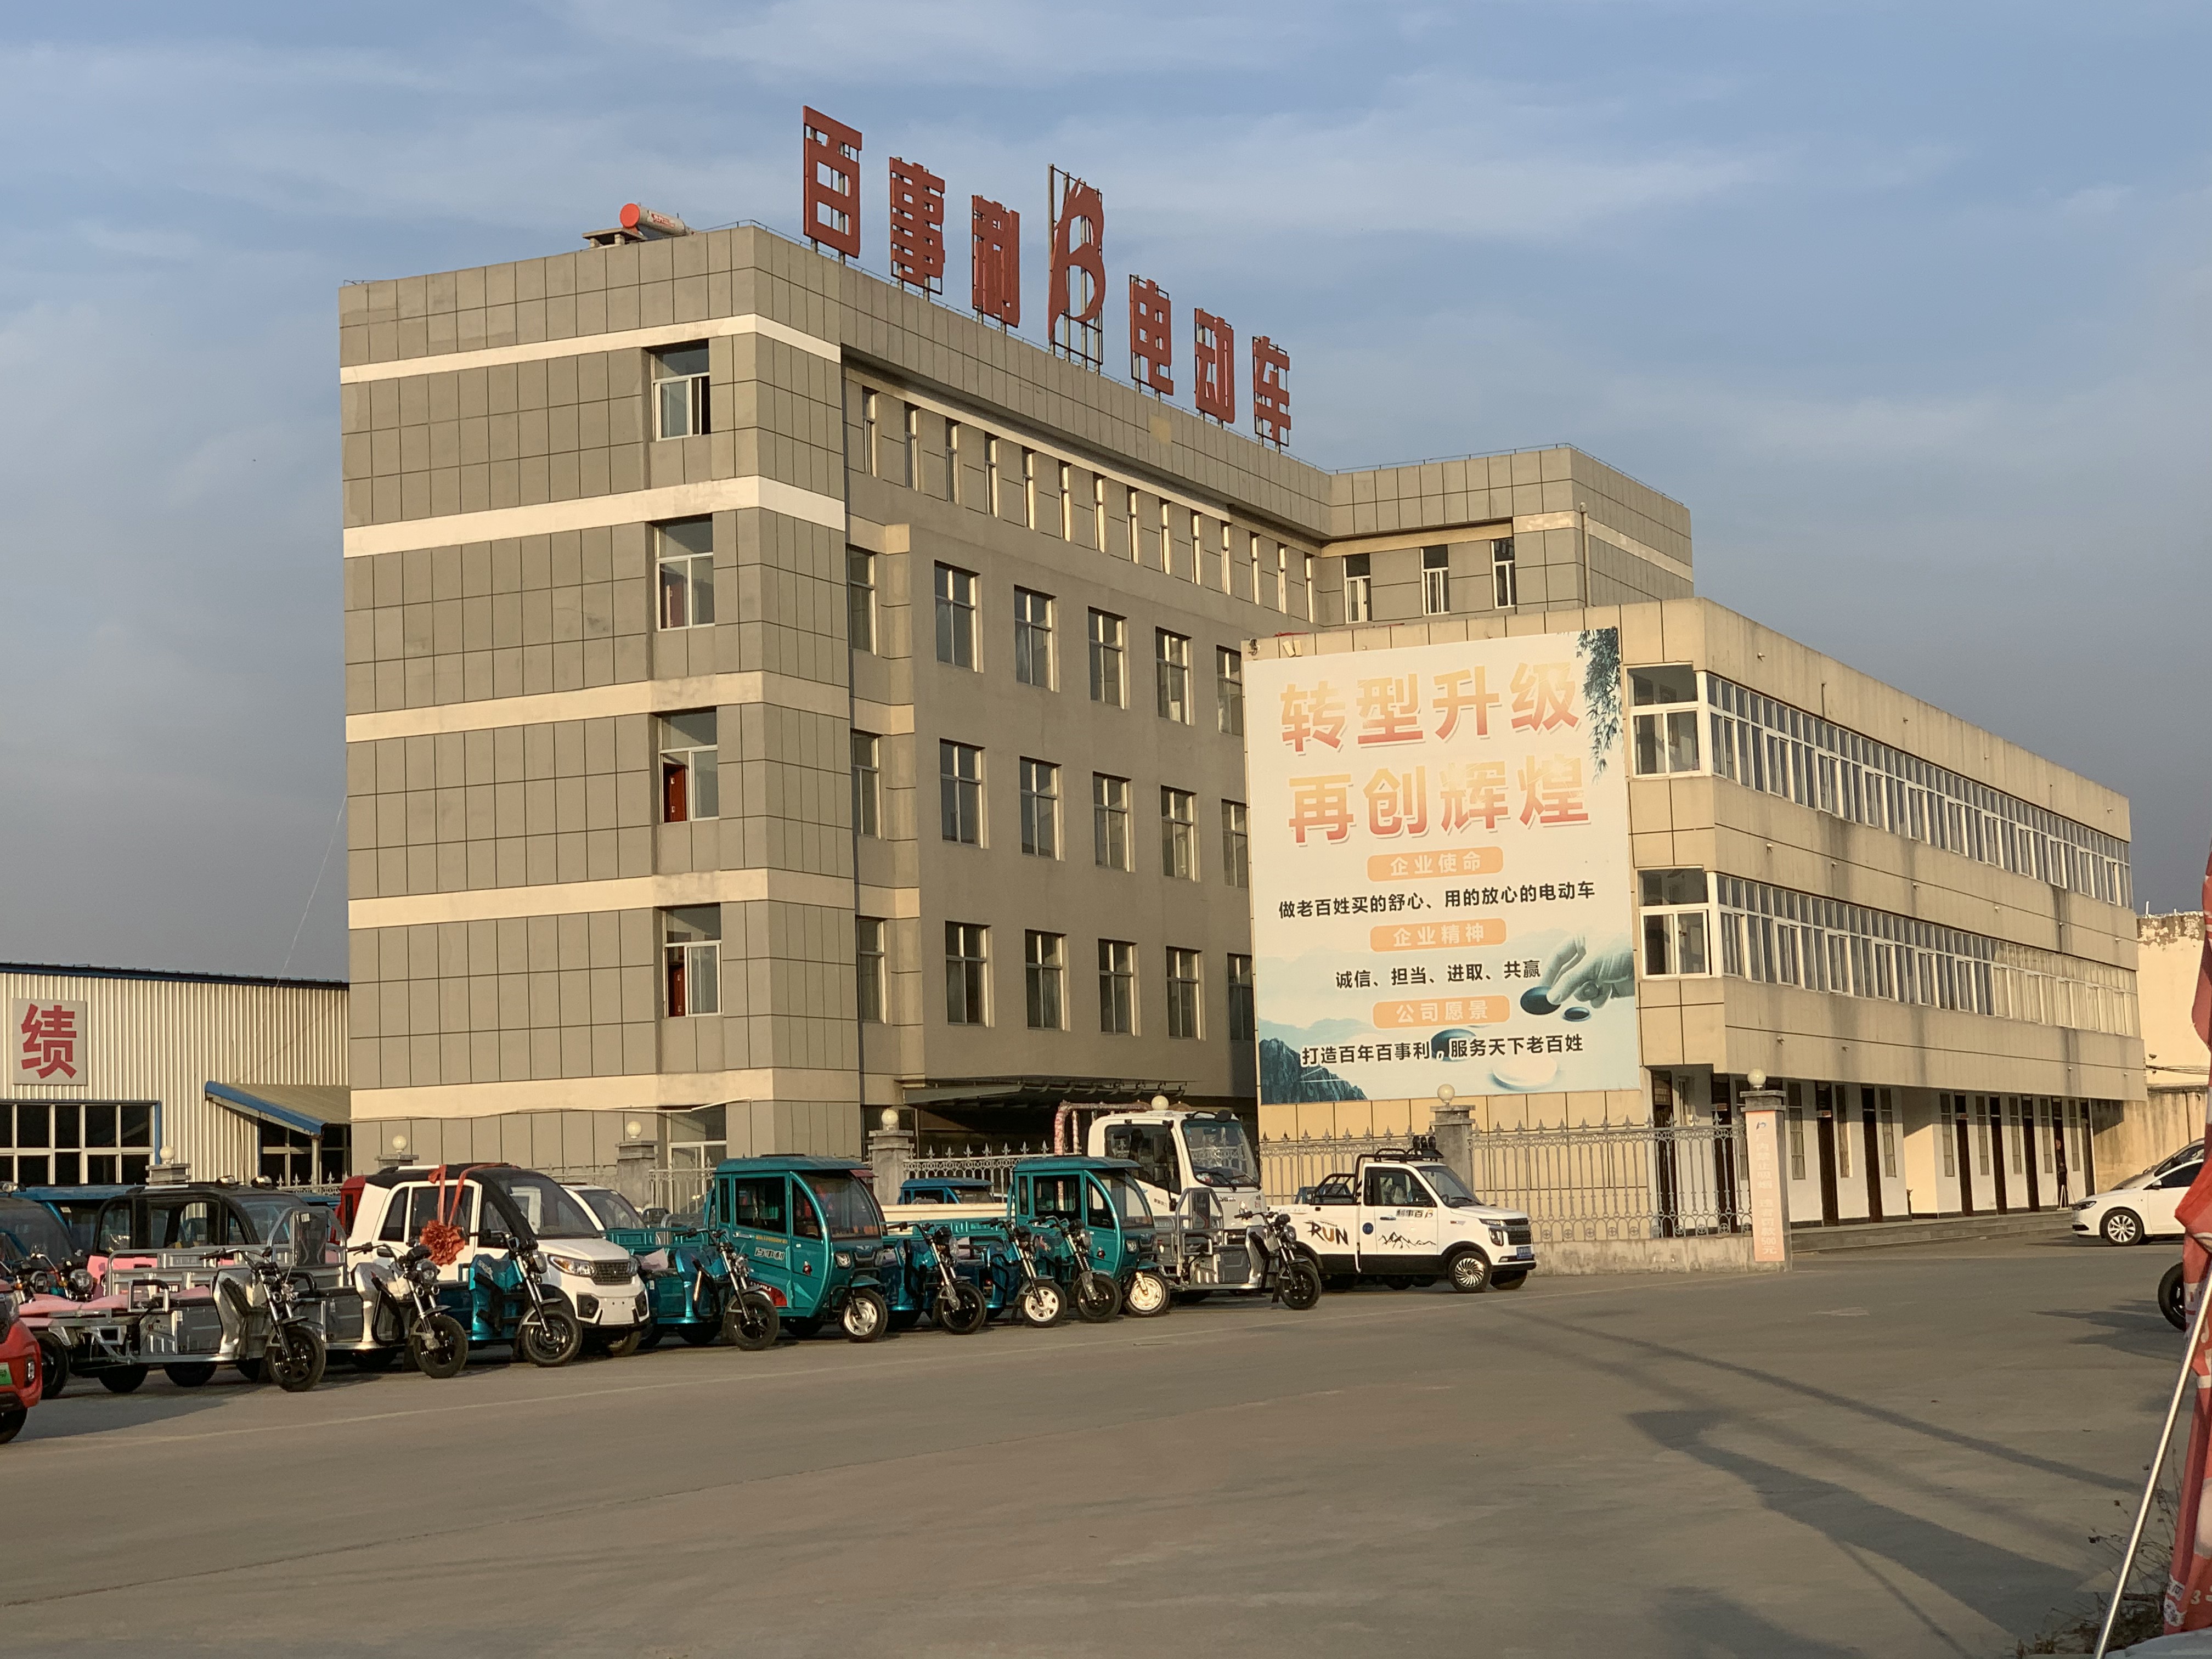 Área da fábrica Furinkaevcar na China